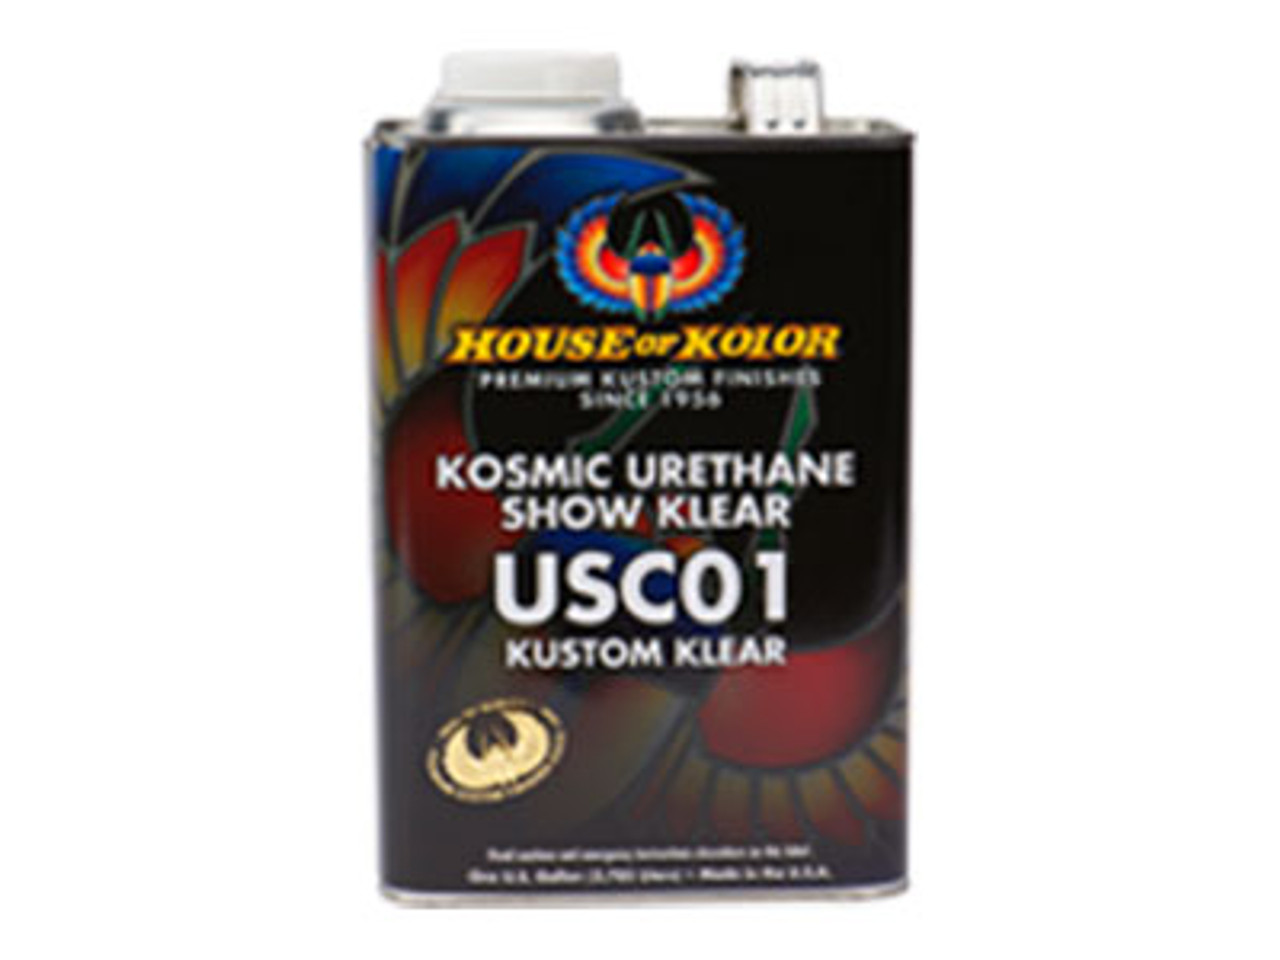 USC-01 Kosmic Urethane Show Klear